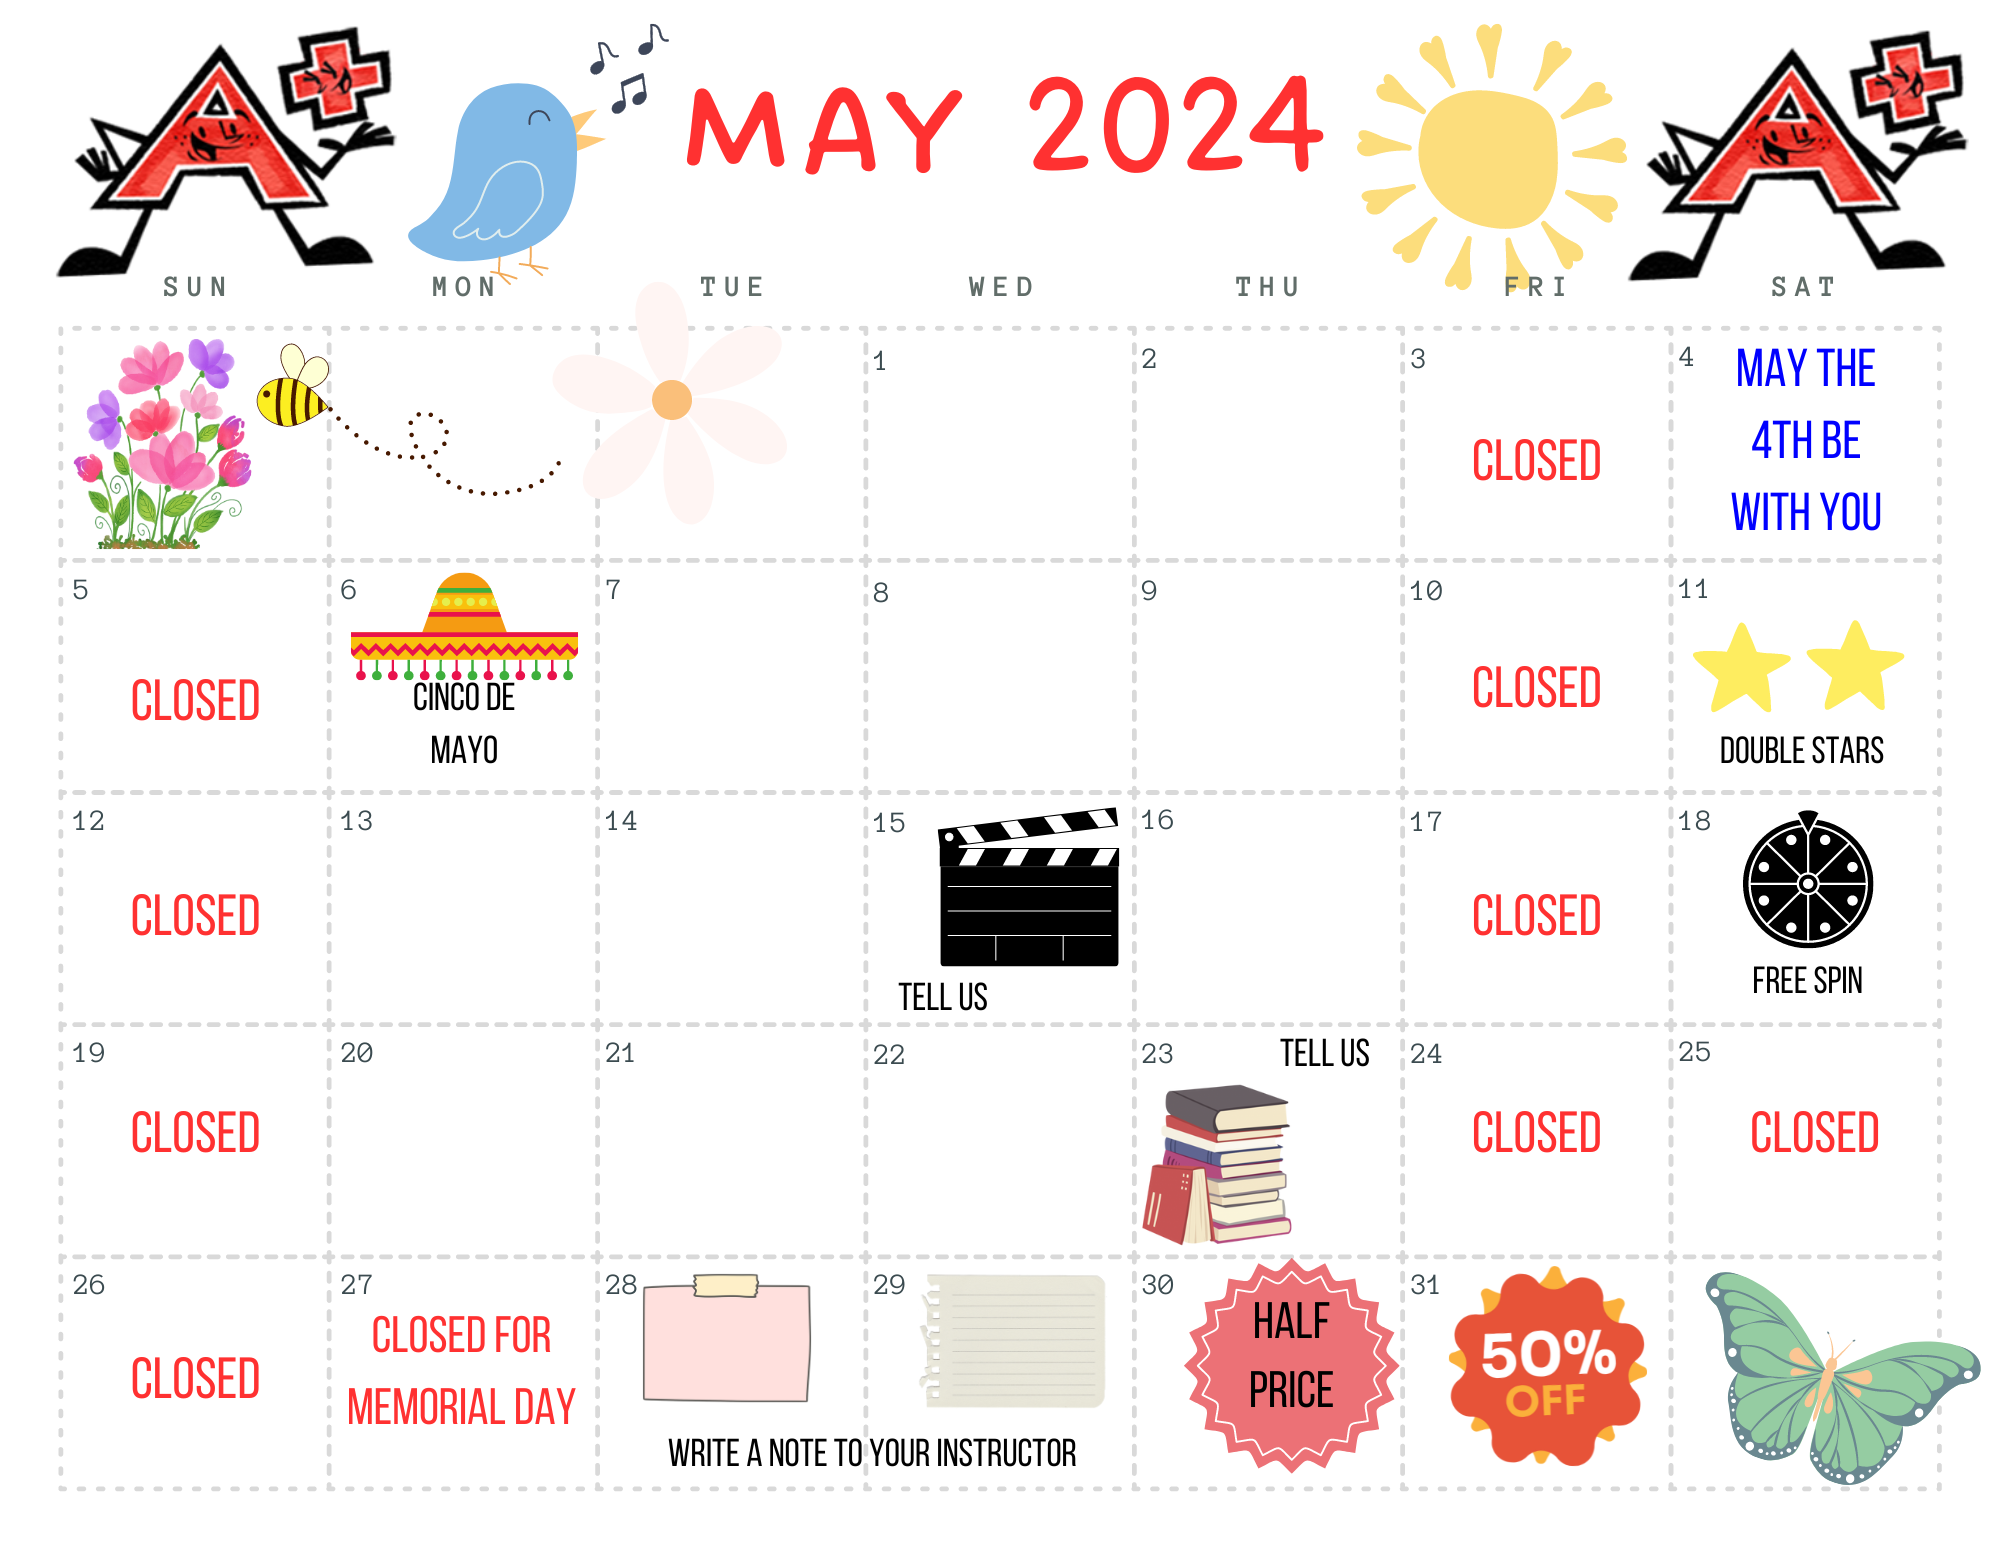 May 2024 Fun Days